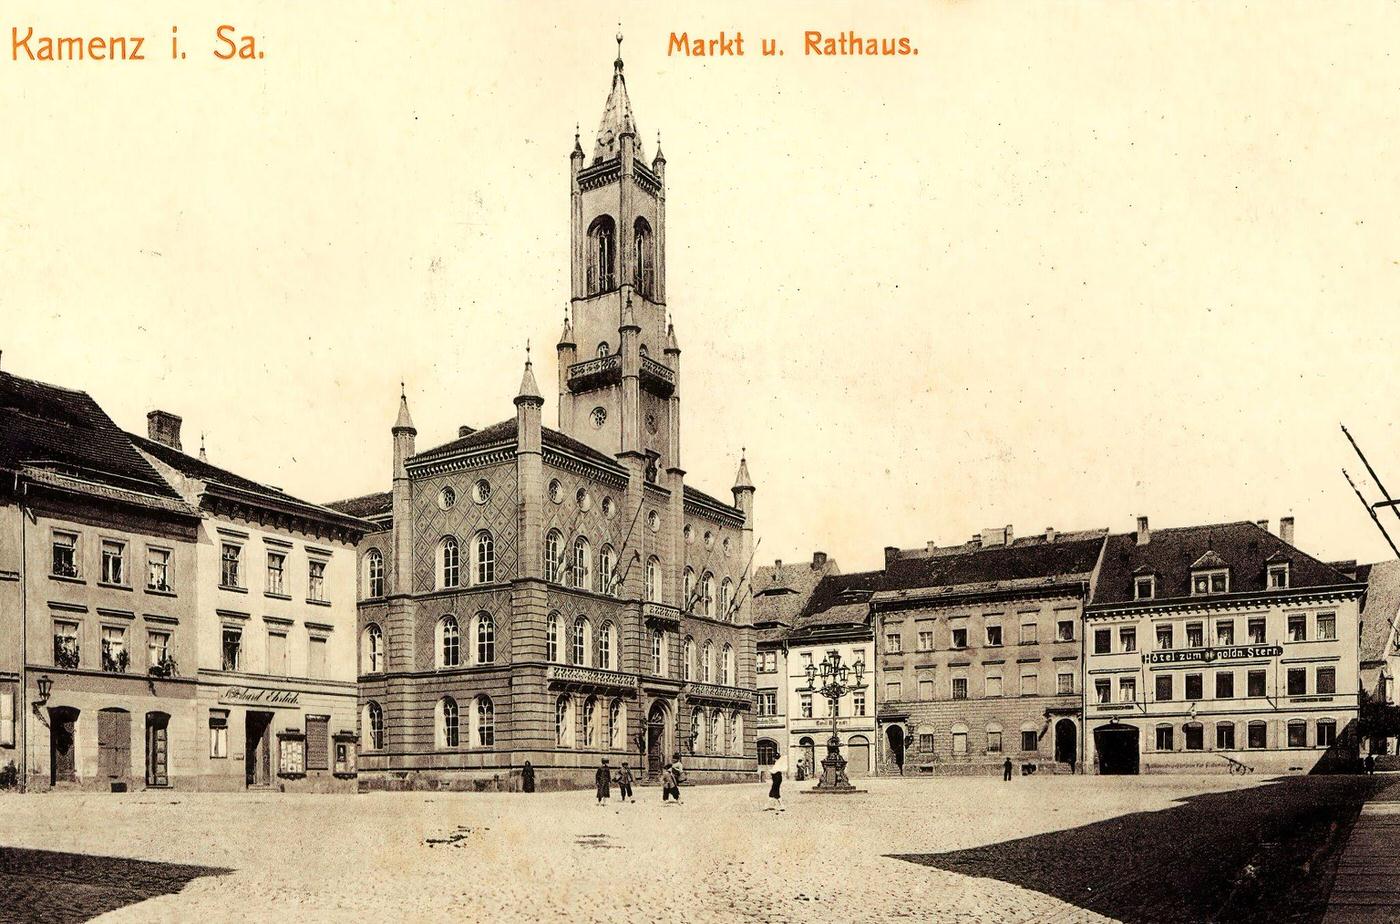 Town halls in Kamenz, Landkreis Bautzen, Germany, 1903.